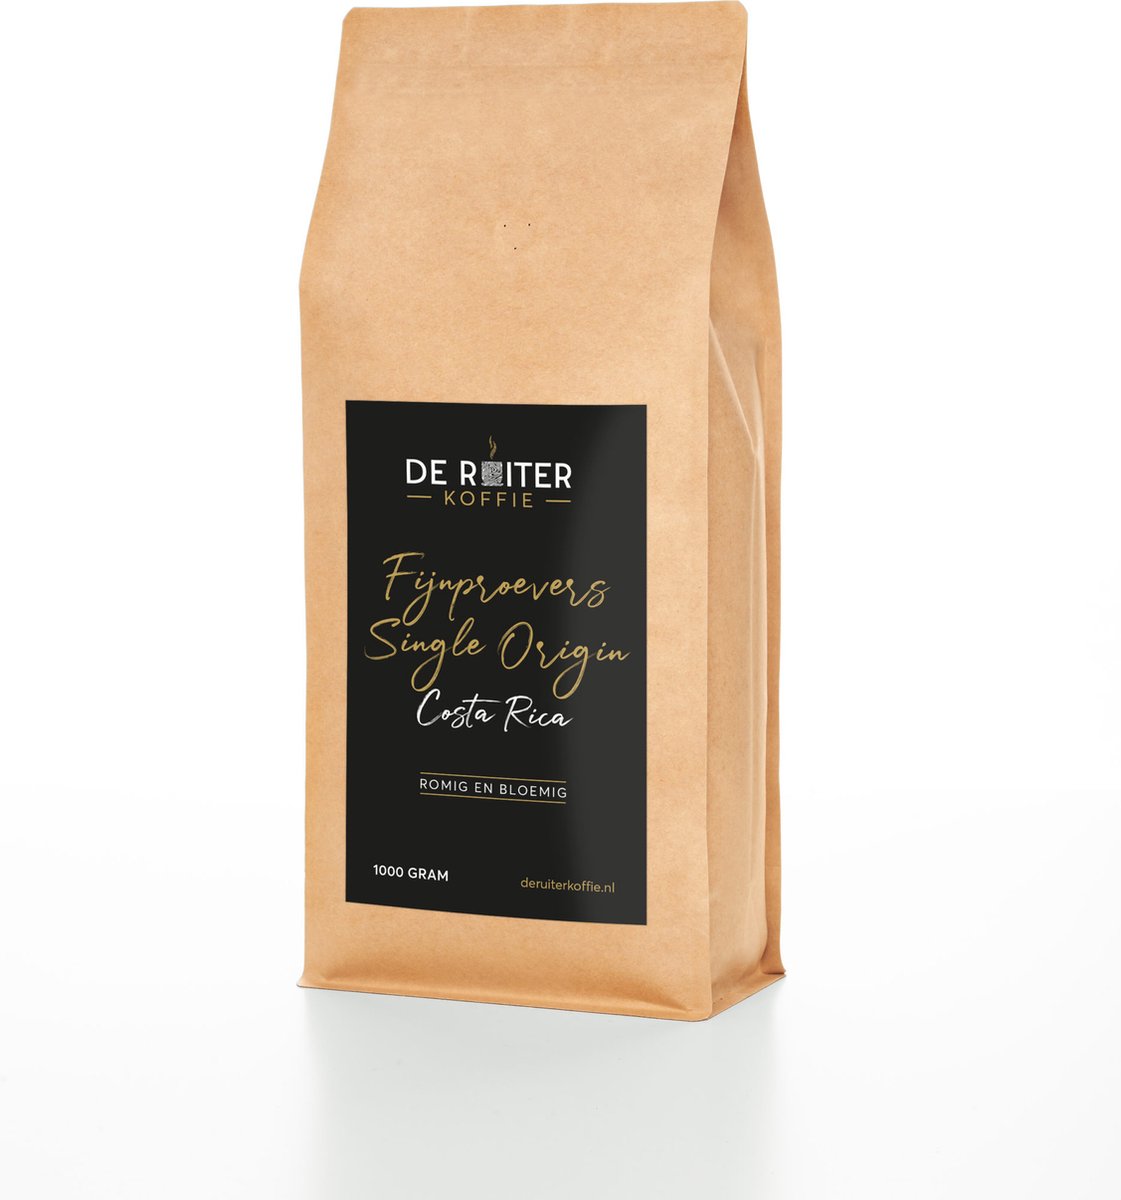 De Ruiter Koffie - Verse koffiebonen - Fijnproevers Single Origin, Costa Rica - 1000 gram - Fijn gemalen